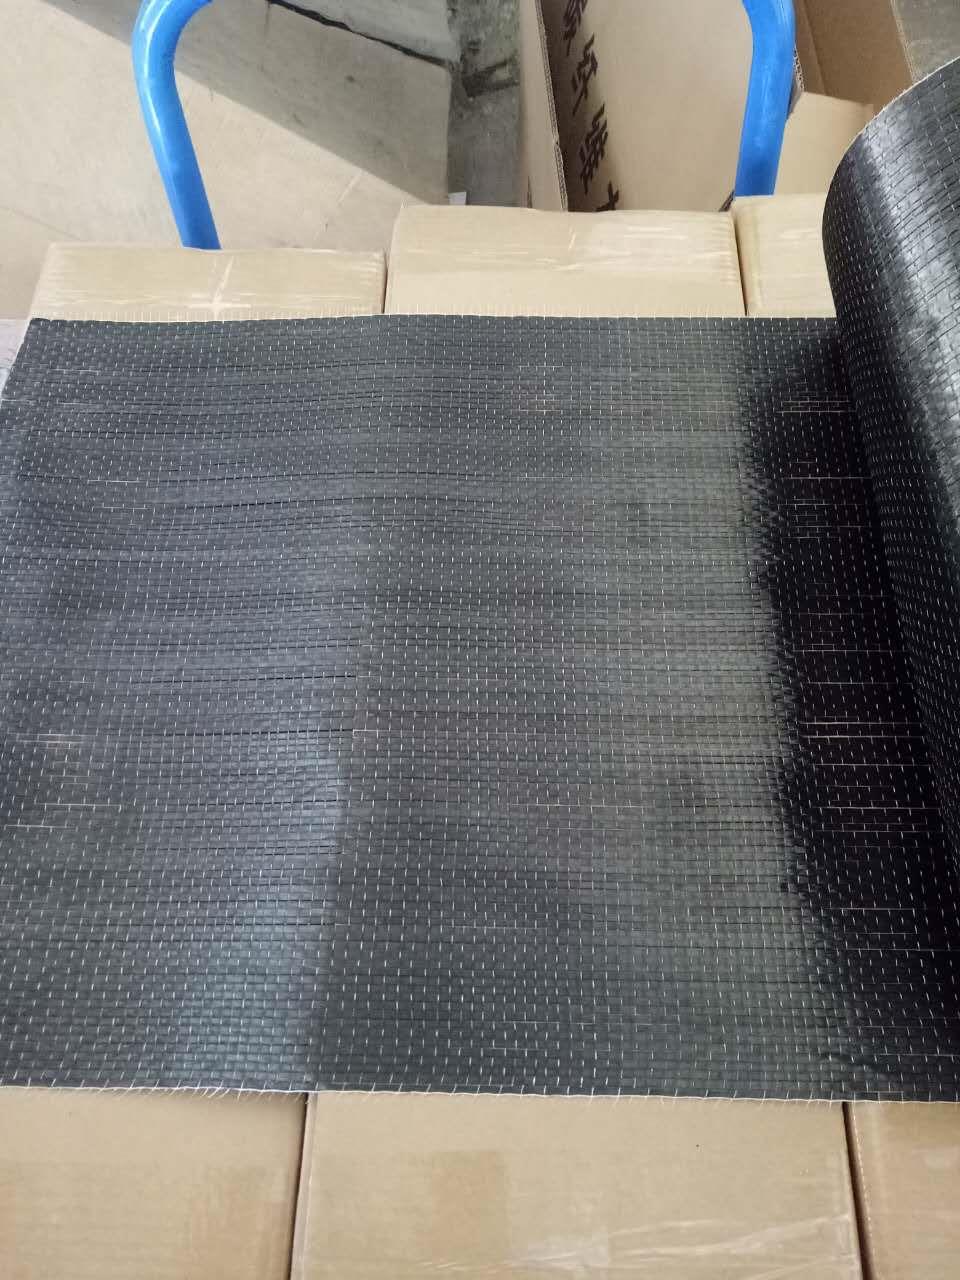 滁州碳纤维布材料批发